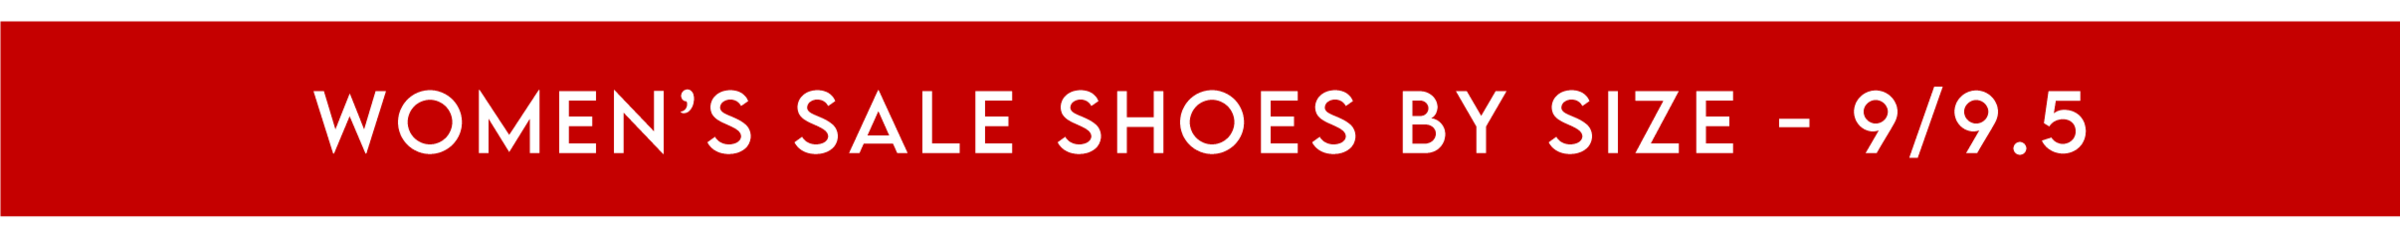 Women's Sale Shoes - Size 9/9.5